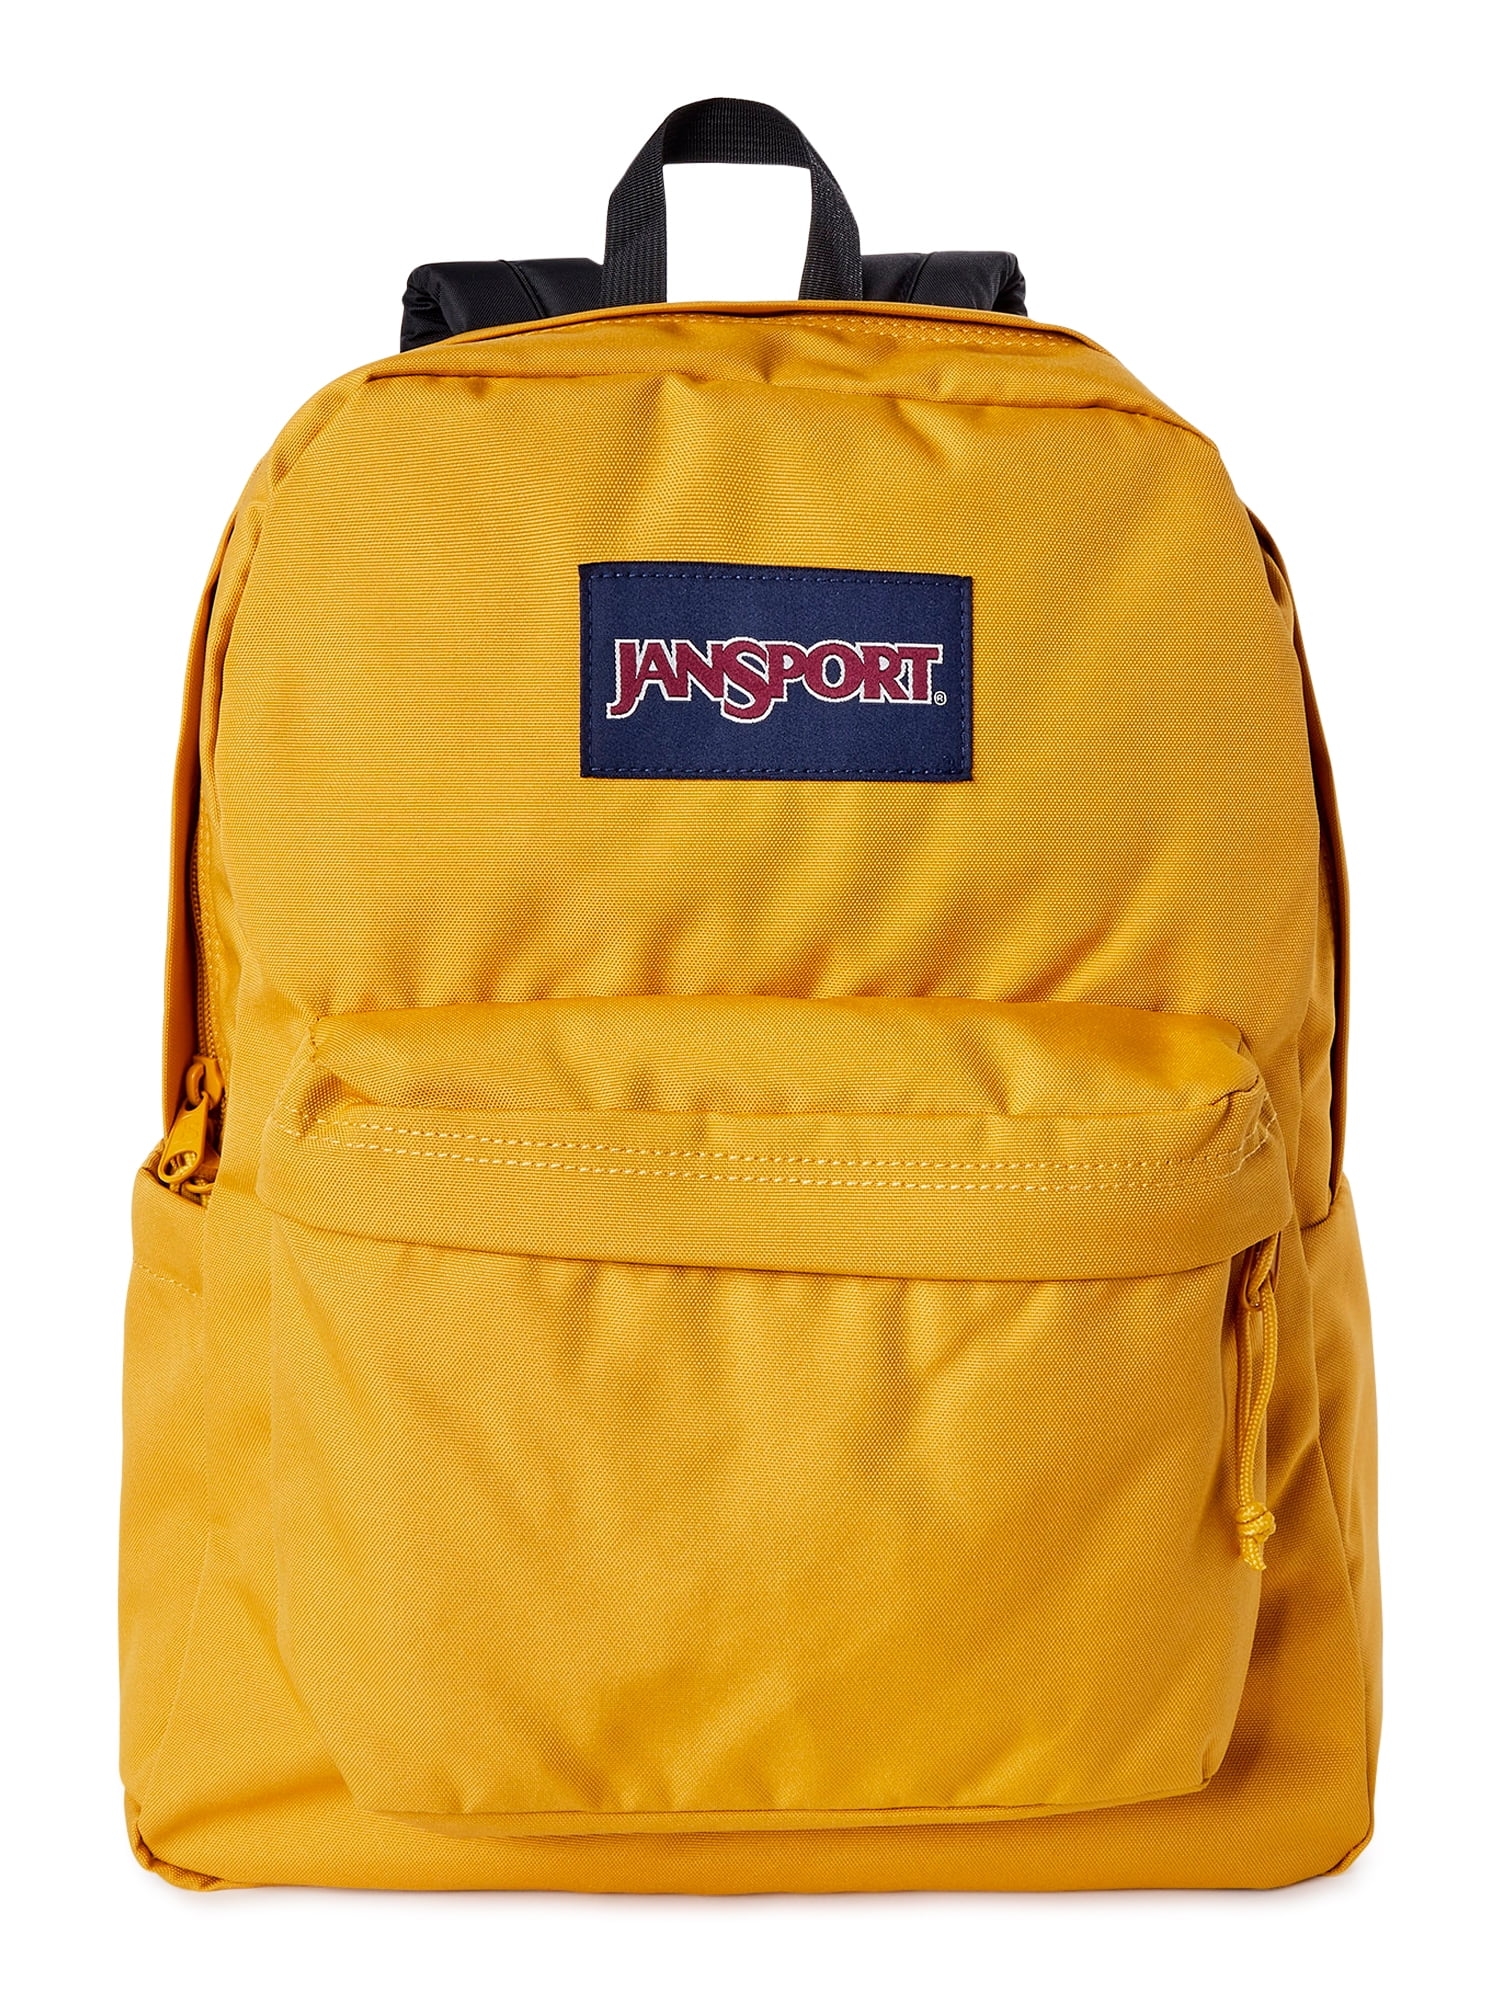 JanSport Unisex SuperBreak Backpack School Bag Honey Yellow - Walmart.com